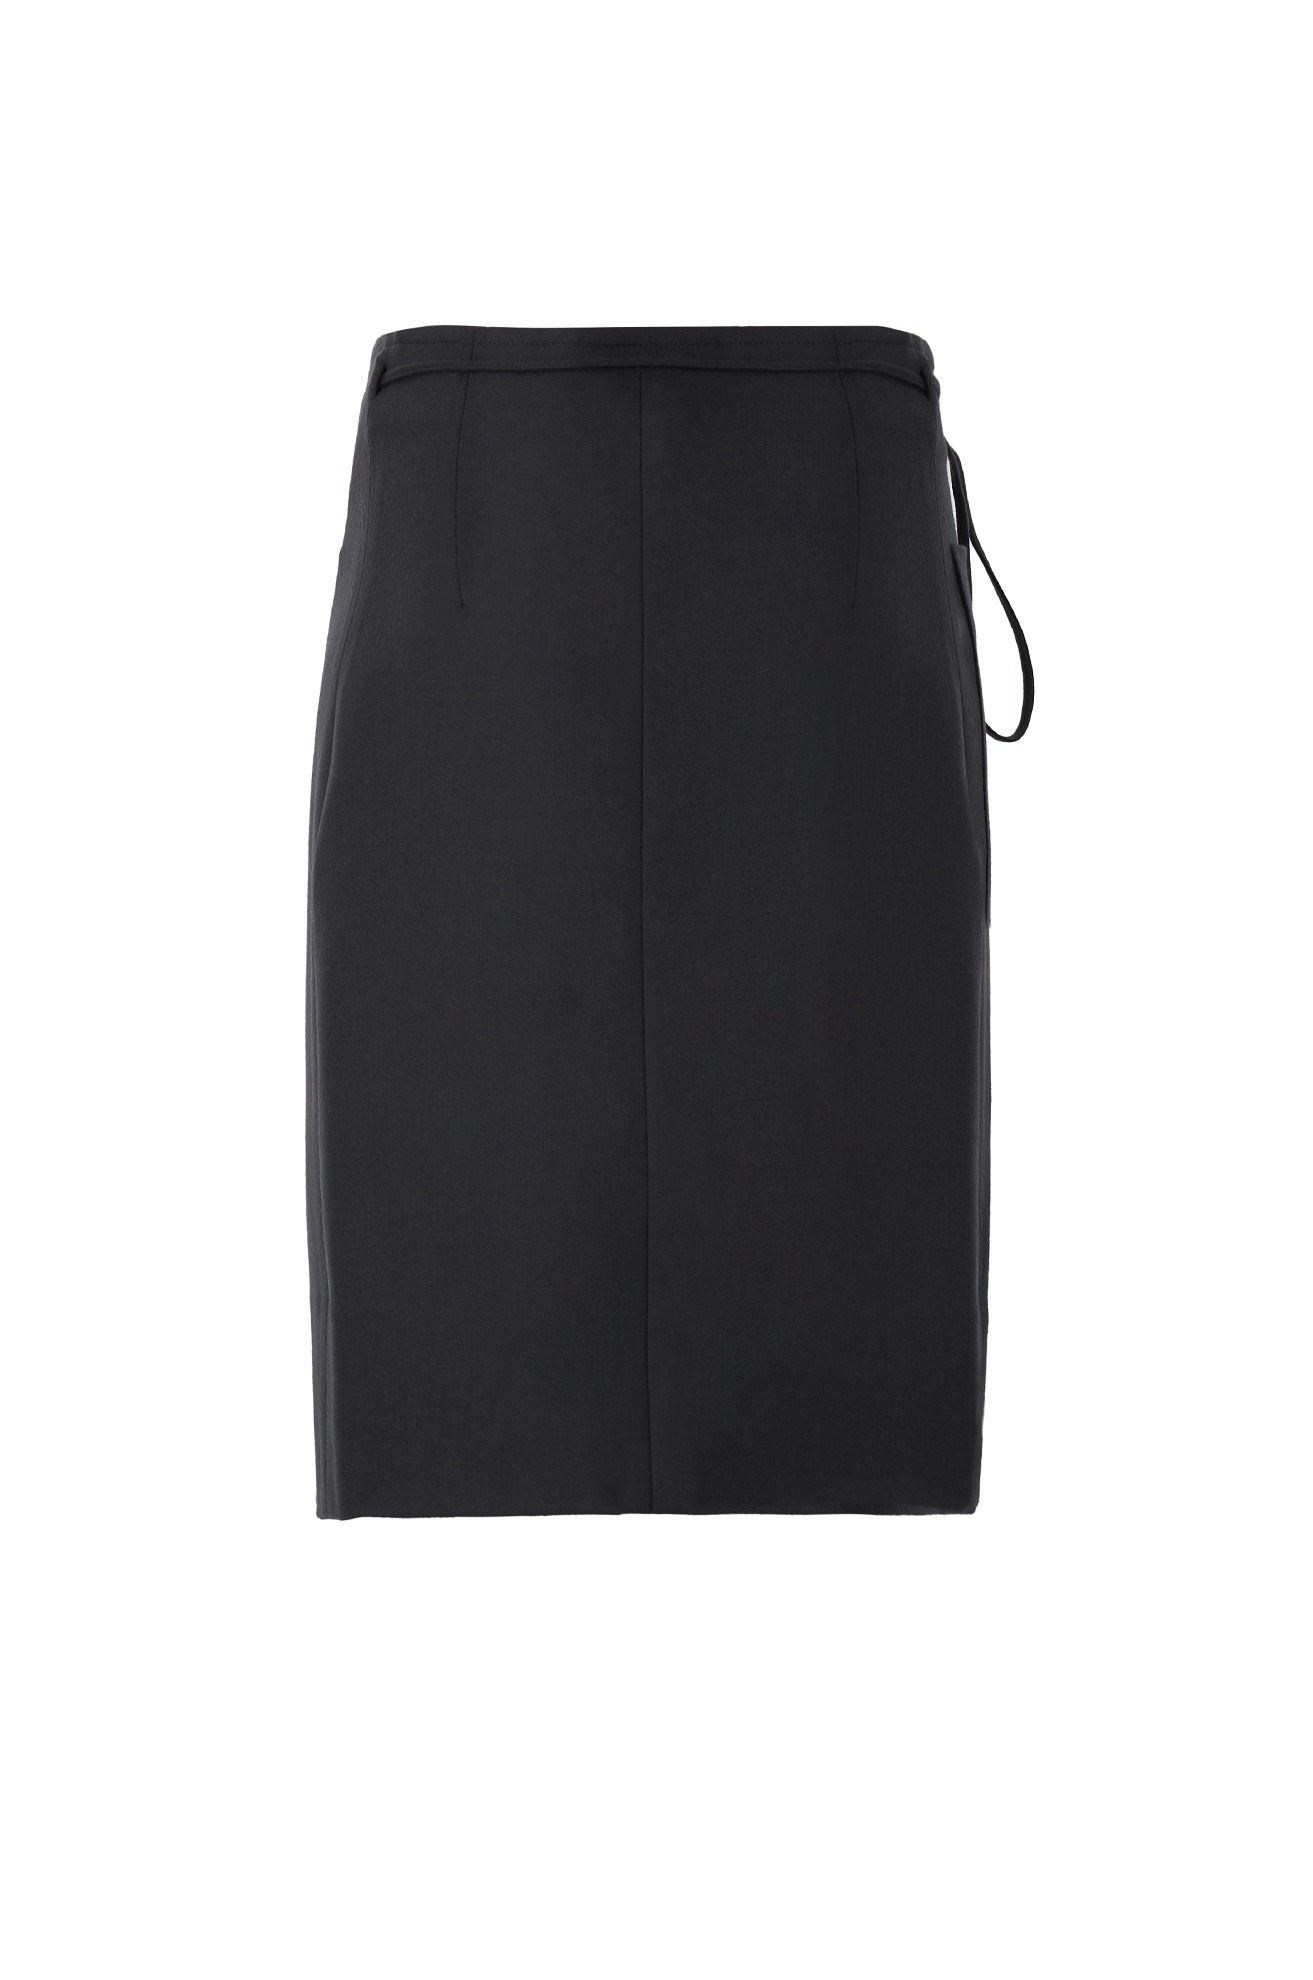 Wrap Skirt (Charcoal)